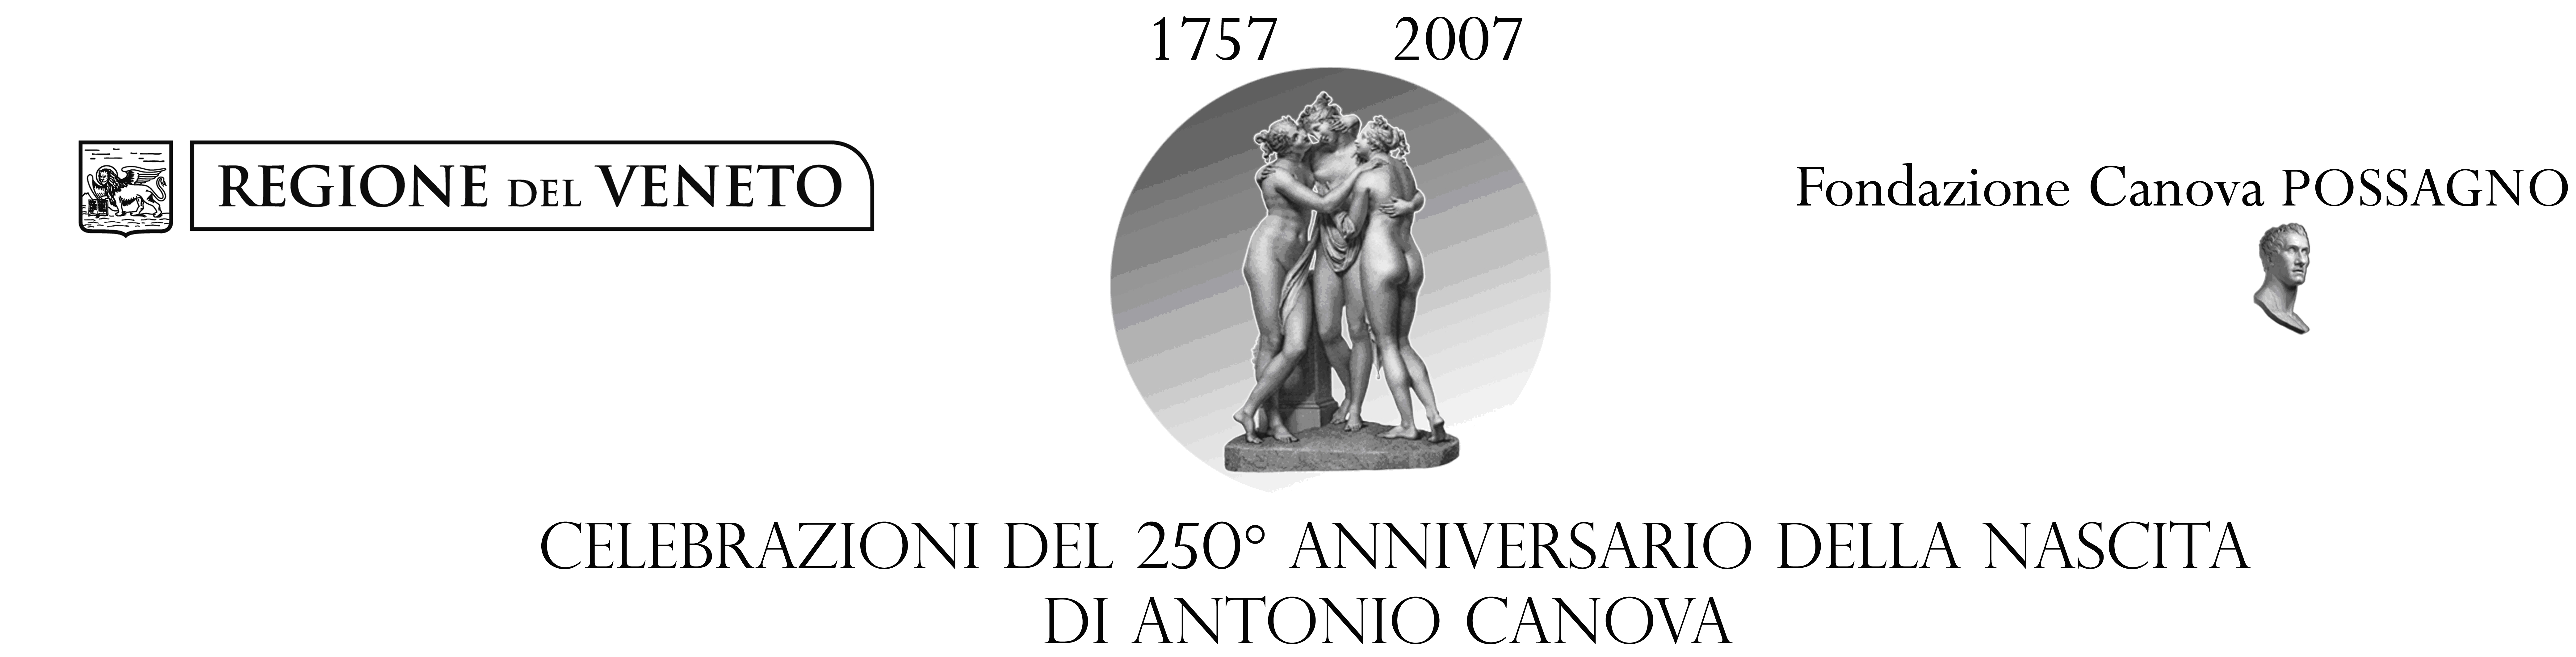 Logo comitato regionale per le celebrazioni del duecentocinquantesimo anniversario della nascita di Antonio Canova